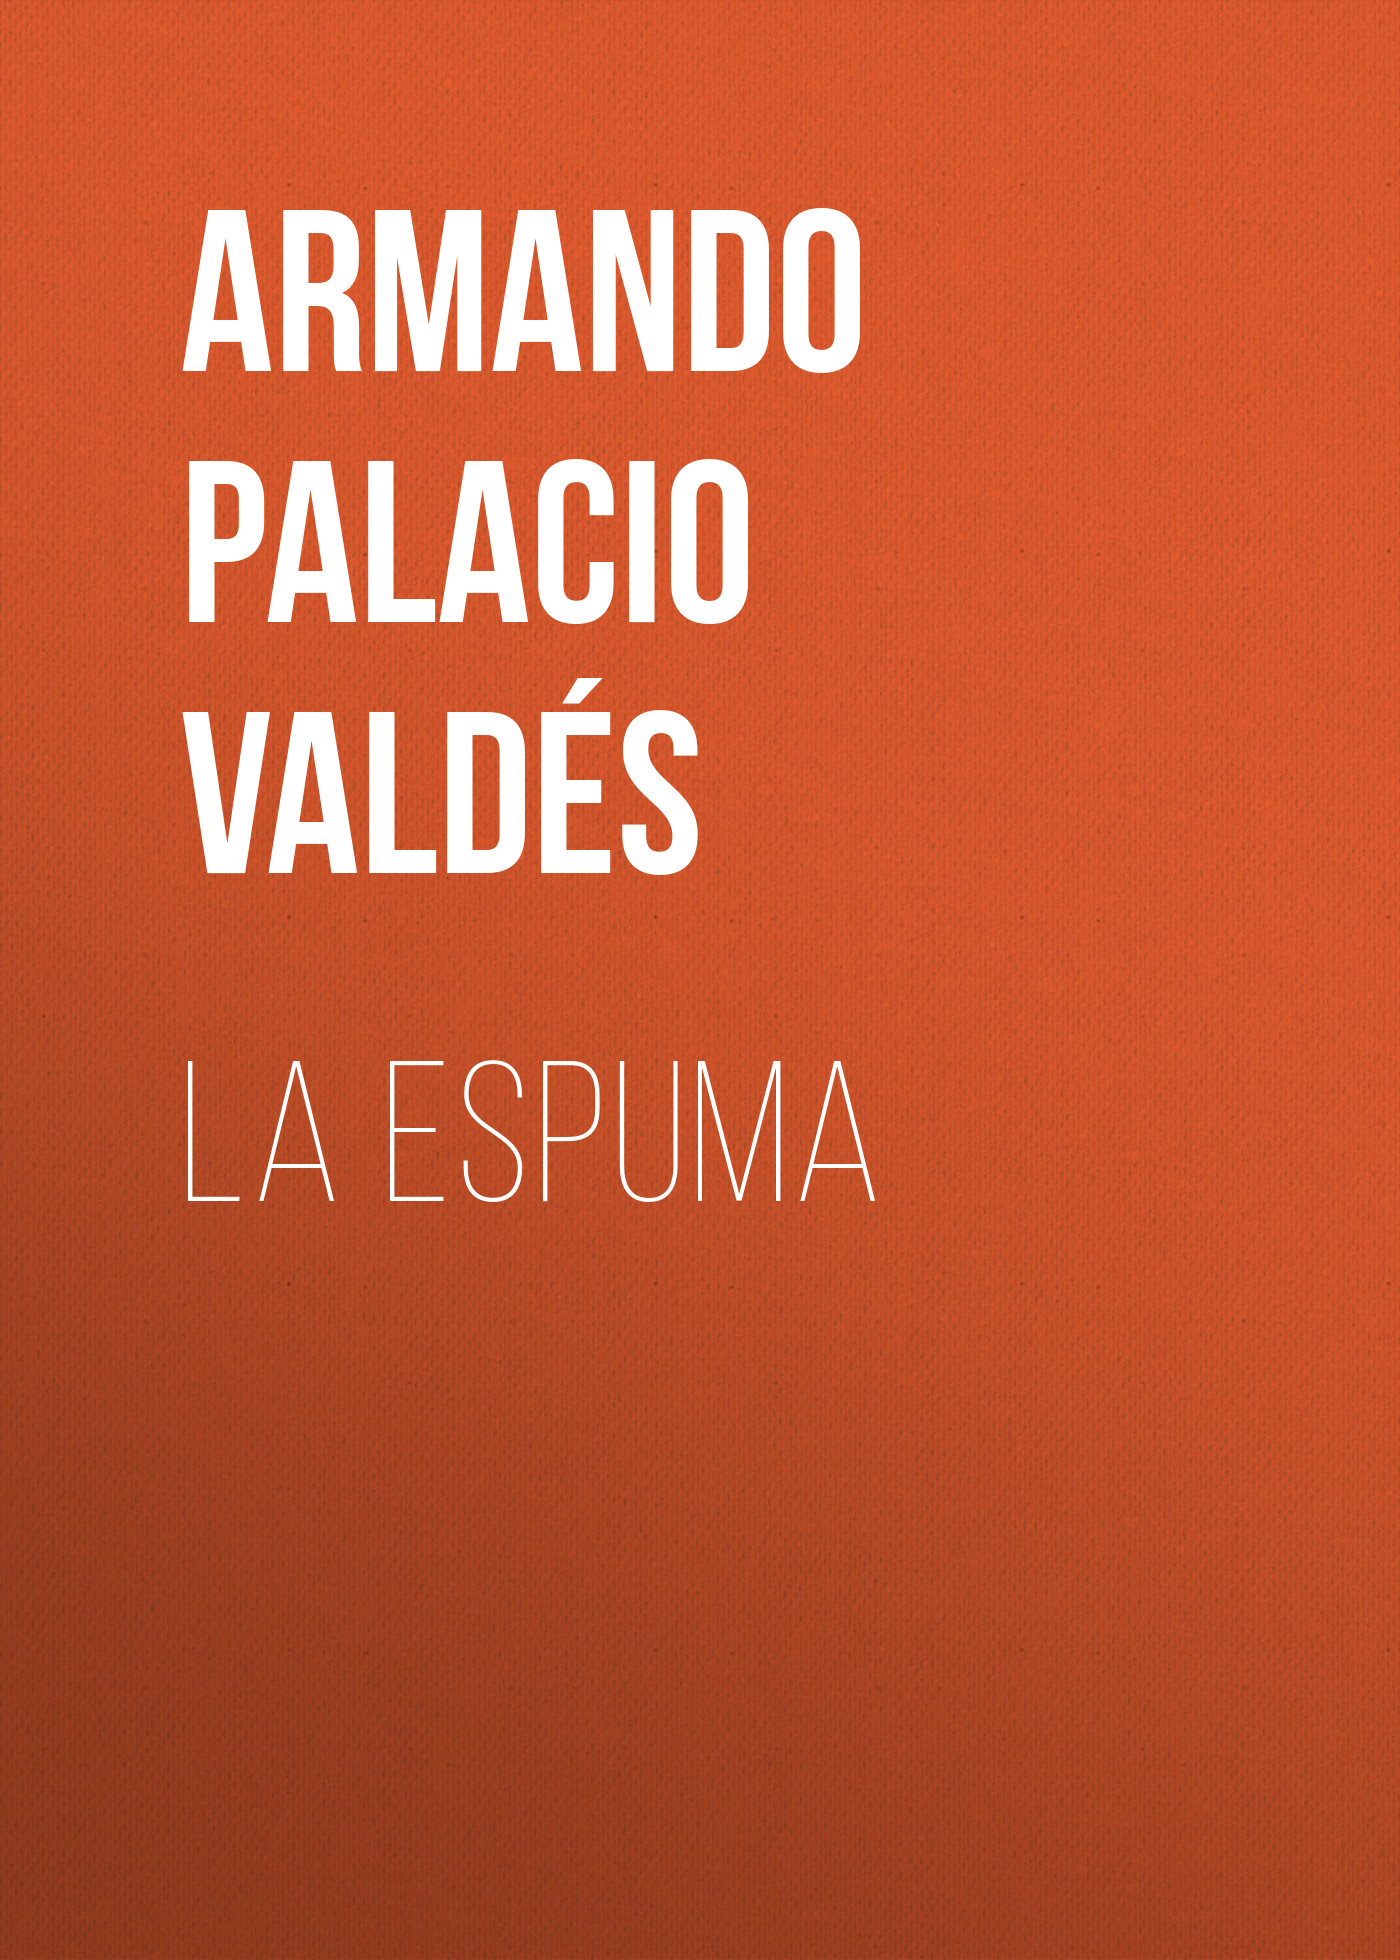 Книга La Espuma из серии , созданная Armando Palacio Valdés, может относится к жанру Зарубежная старинная литература, Зарубежная классика, Зарубежные любовные романы. Стоимость электронной книги La Espuma с идентификатором 36324380 составляет 0 руб.